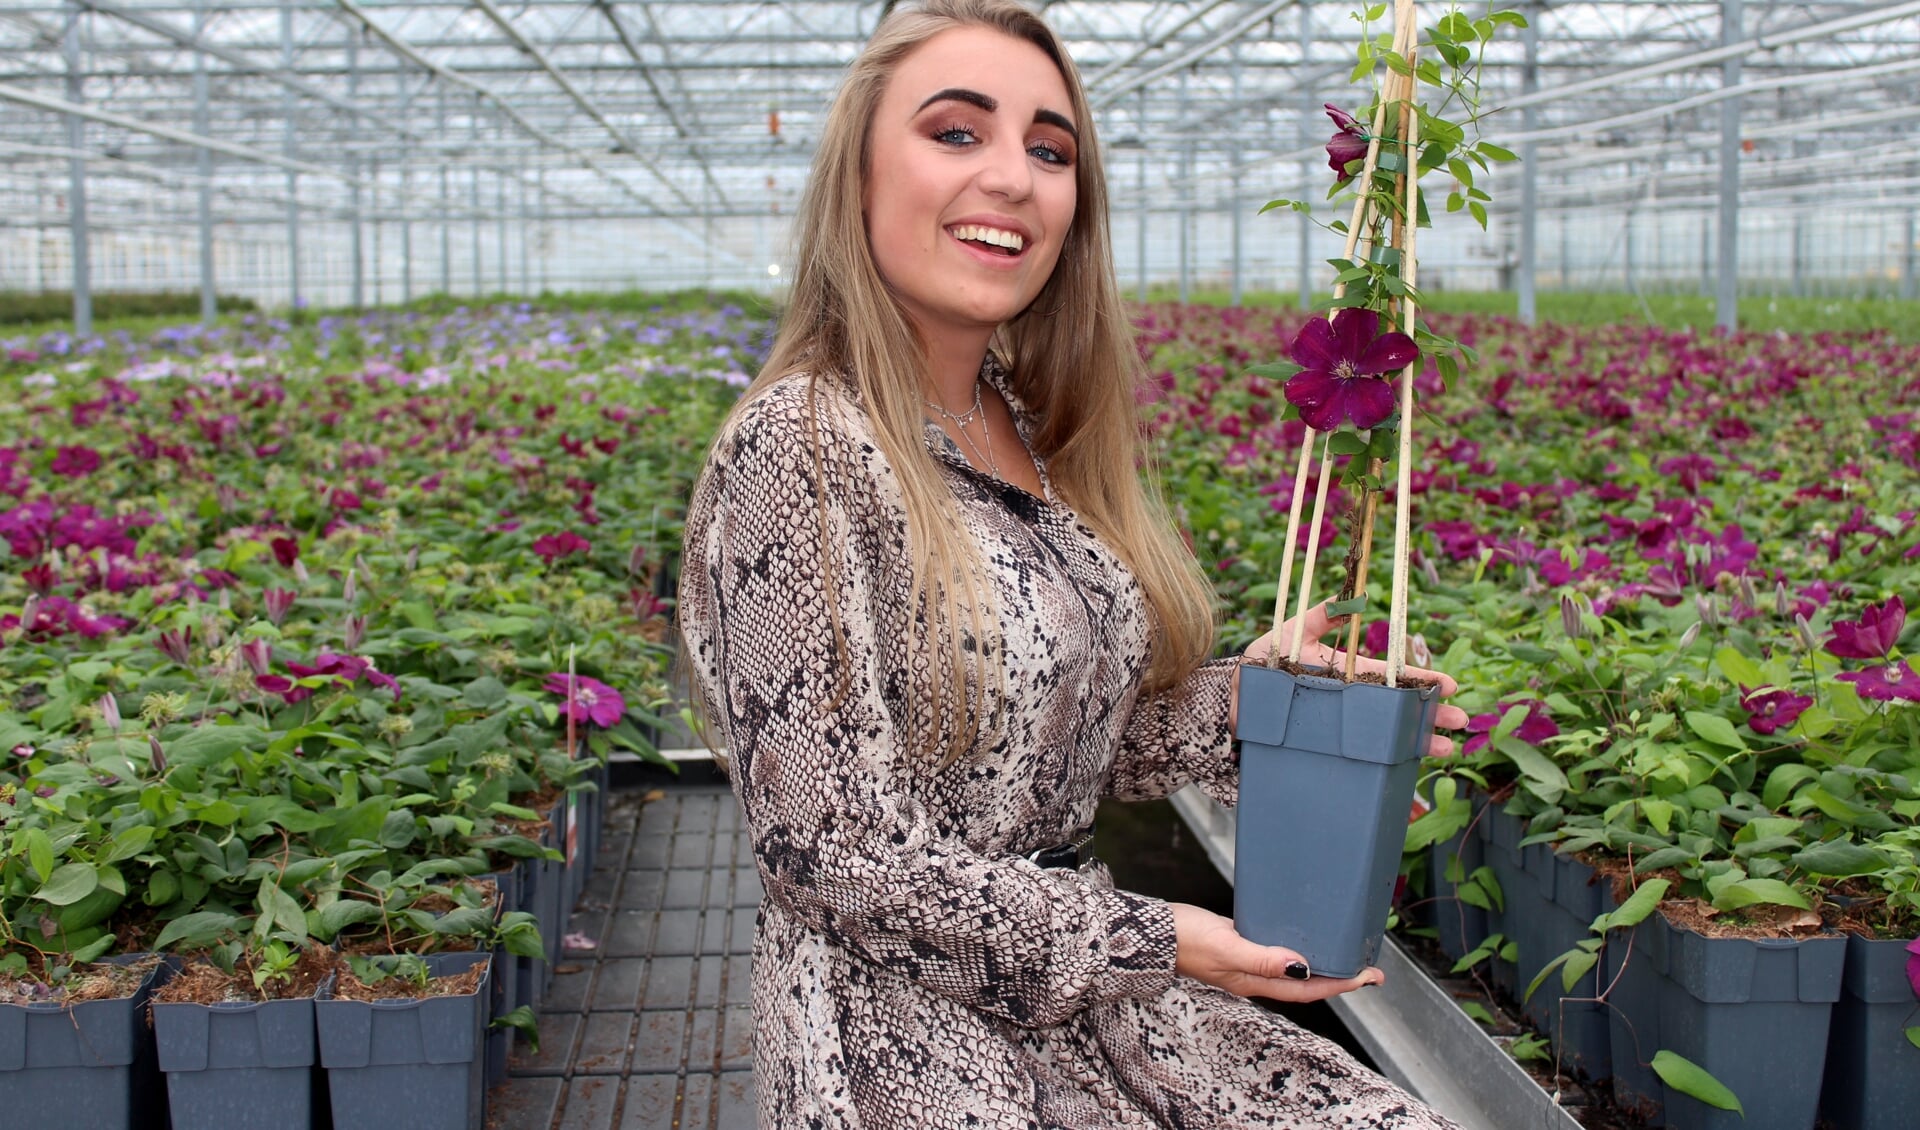 Paulina Skowron (24) houdt van planten en studeerde commerciële economie. Ze combineert het in haar werk als e-commerce specialist in de boomkwekerij. 